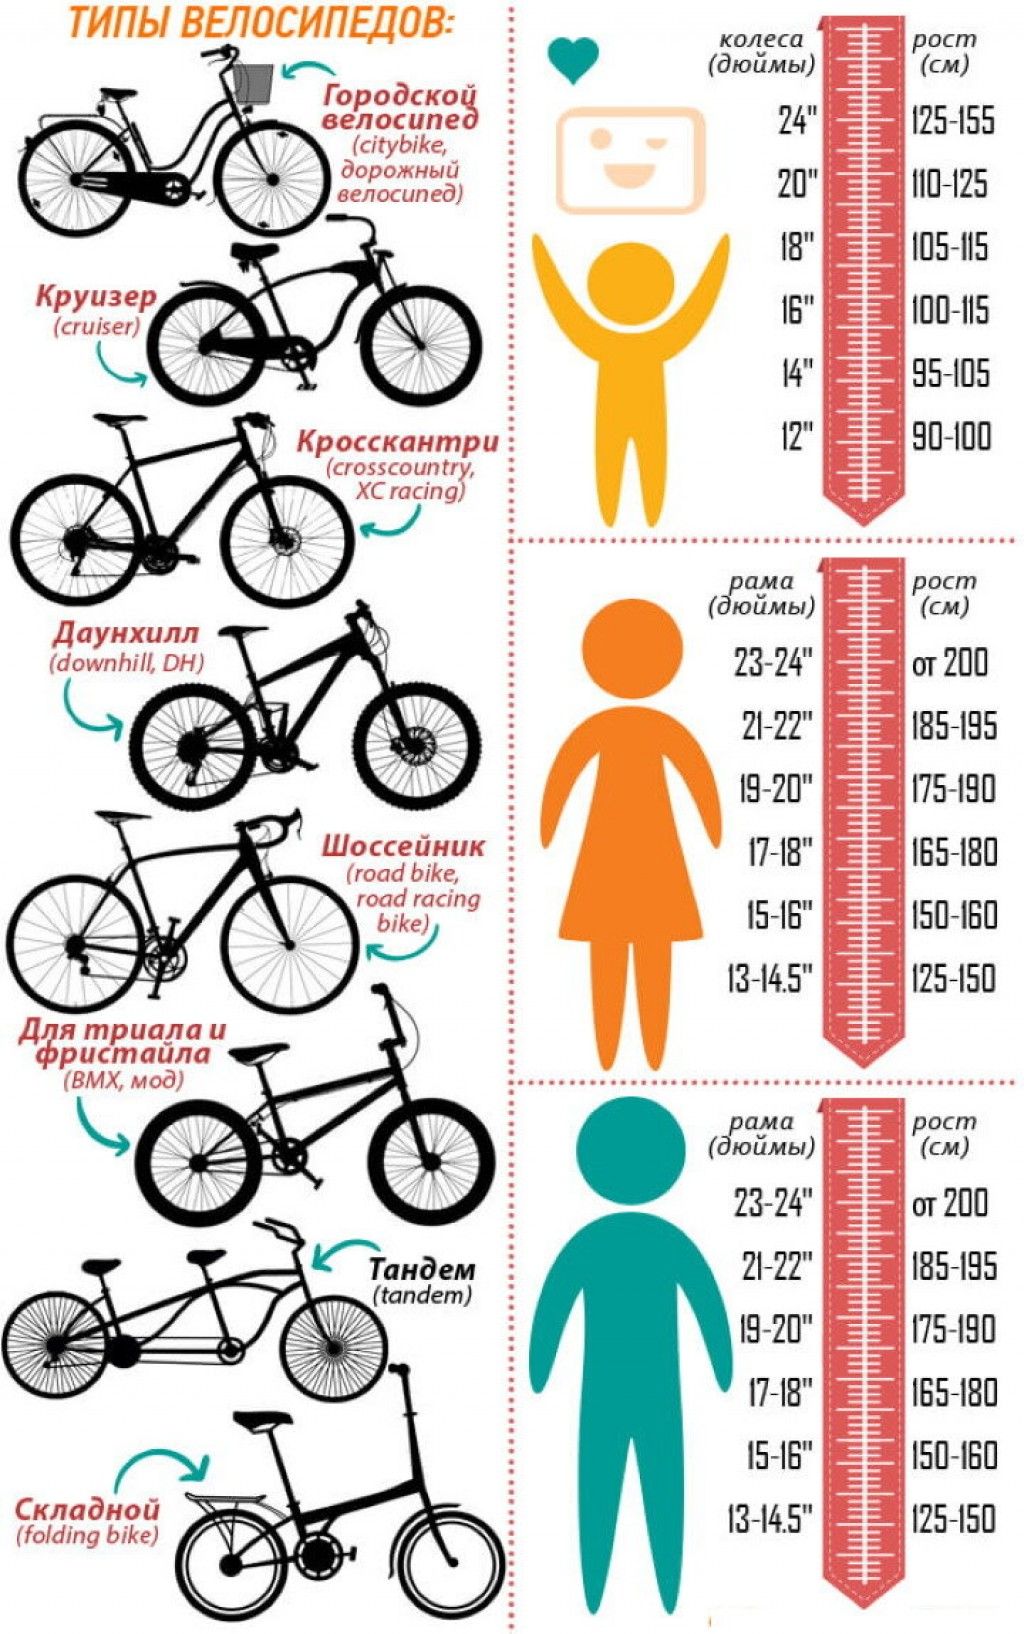 Как выбрать раму велосипеда. Как подобрать размер рамы велосипеда по росту ребенка. Как выбрать размер рамы велосипеда по росту ребенка. Размер рамы и колес велосипеда по росту таблица для детей. Размер рамы у велосипеда с 26 колесами.